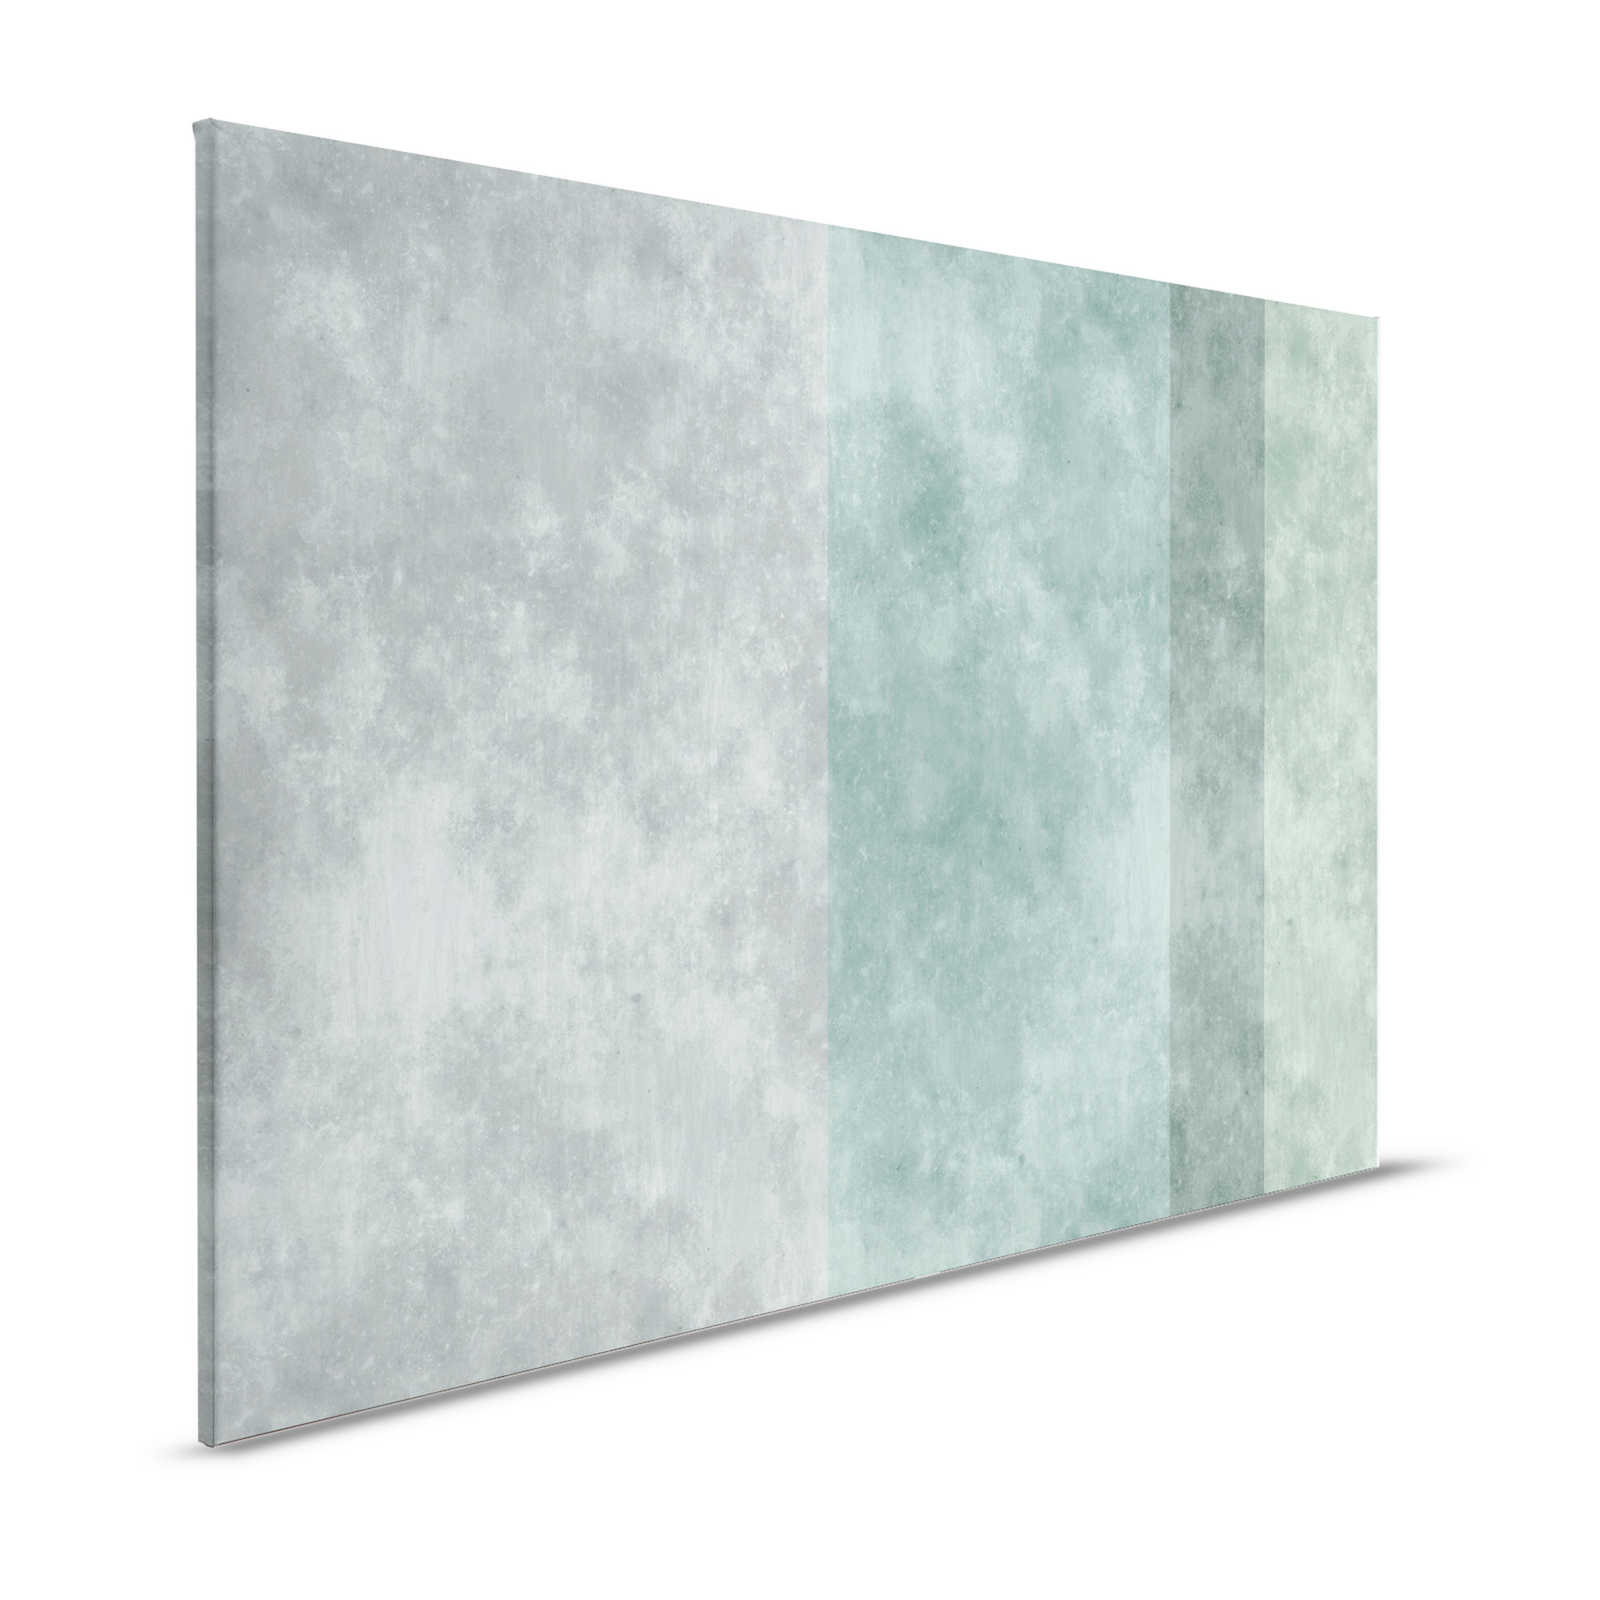 Betonlook canvas schilderij met strepen | grijs, blauw - 1.20 m x 0.80 m
